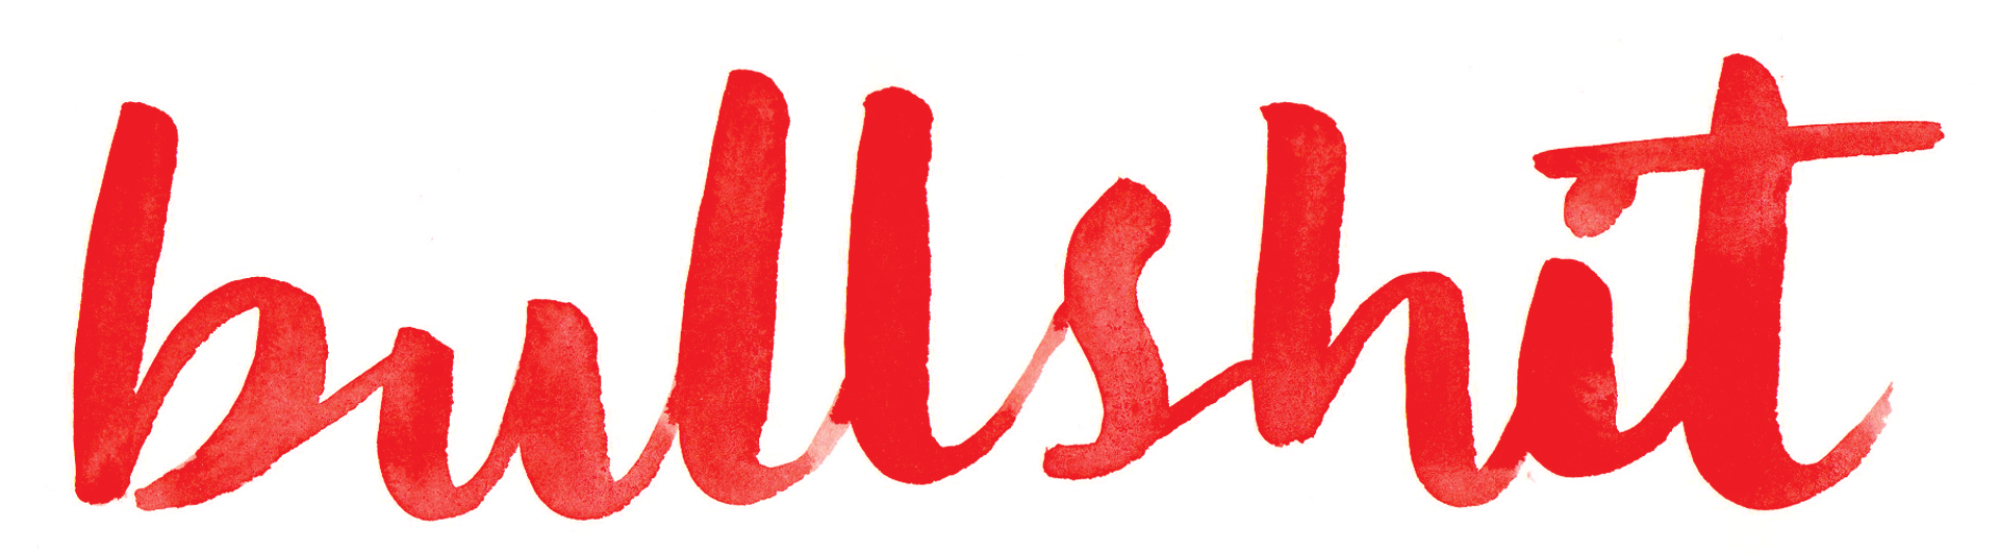 Le mot "conneries" en lettres cursives rouges.